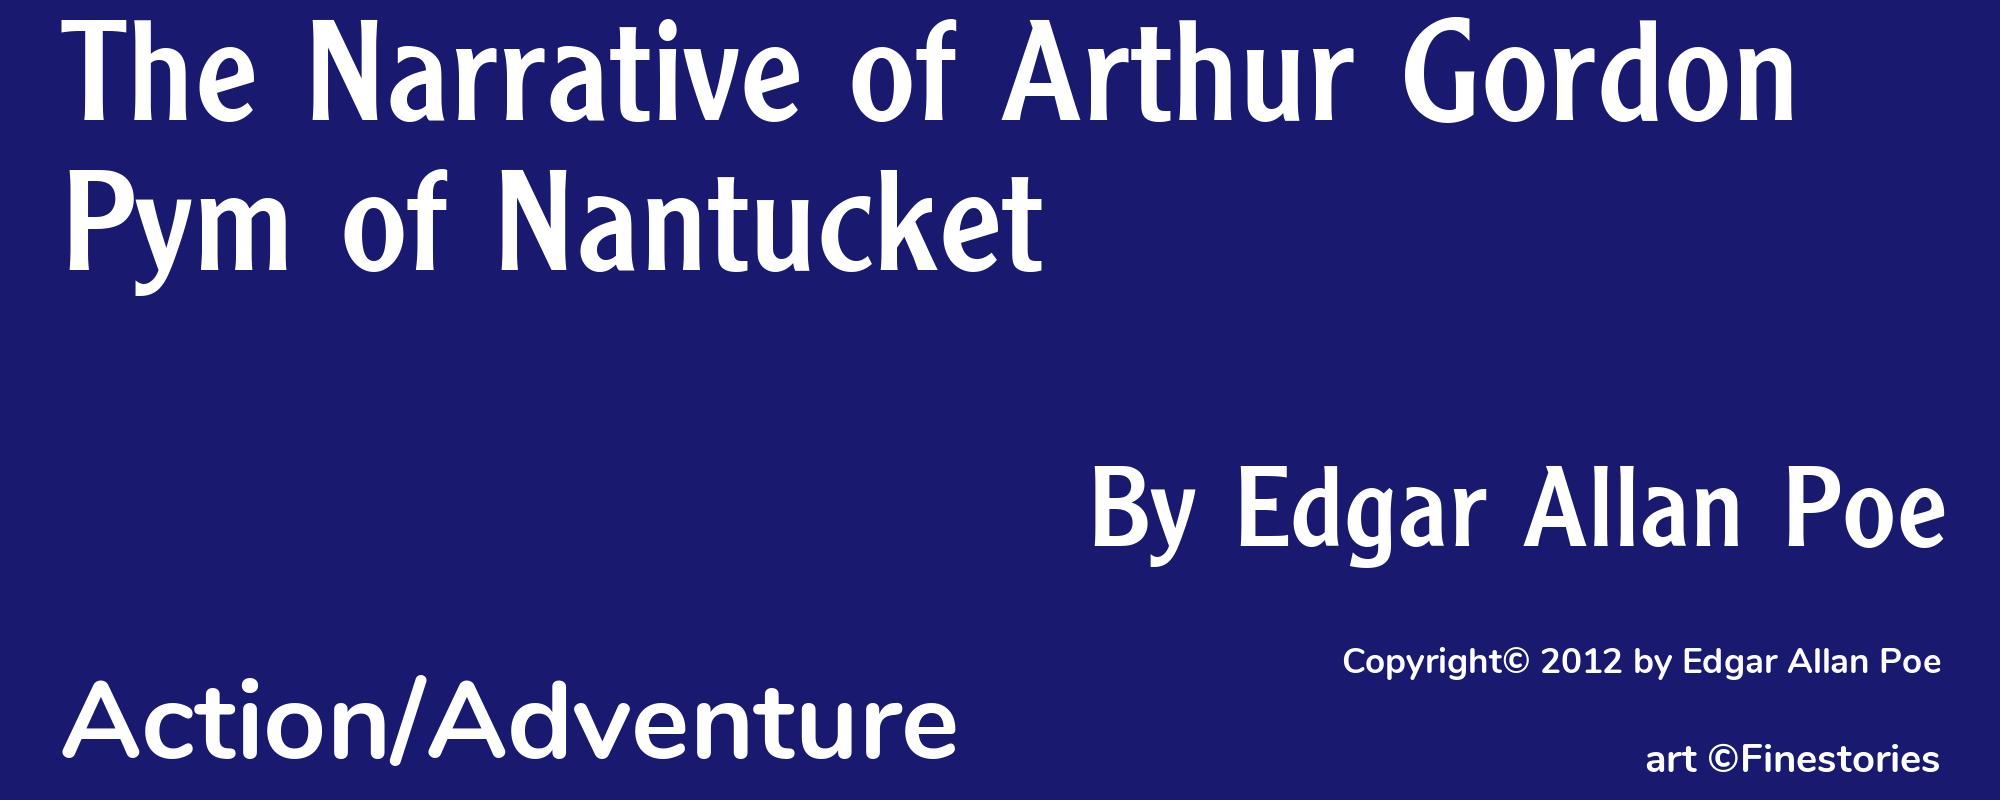 The Narrative of Arthur Gordon Pym of Nantucket - Cover